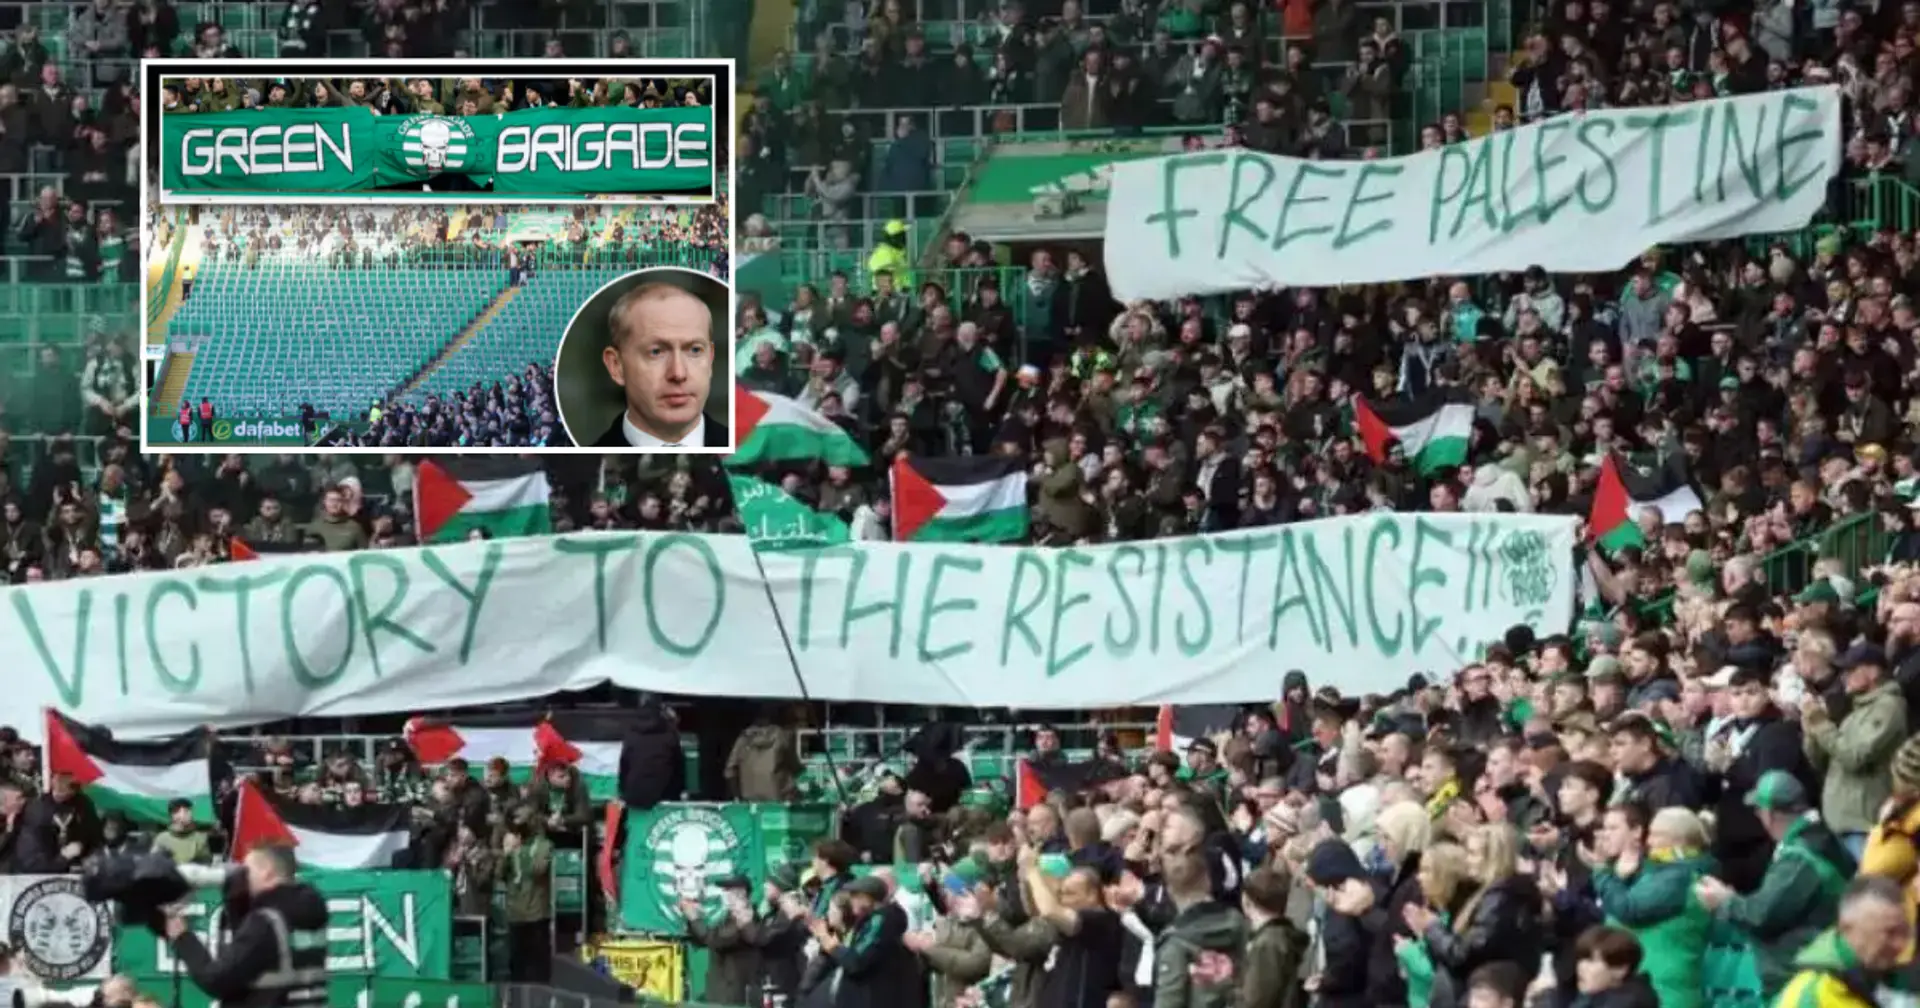 Celtic sperrte Dauerkarten für fast 200 Mitglieder der Fangruppe Green Brigade wegen ihrer Unterstützung für Palästina